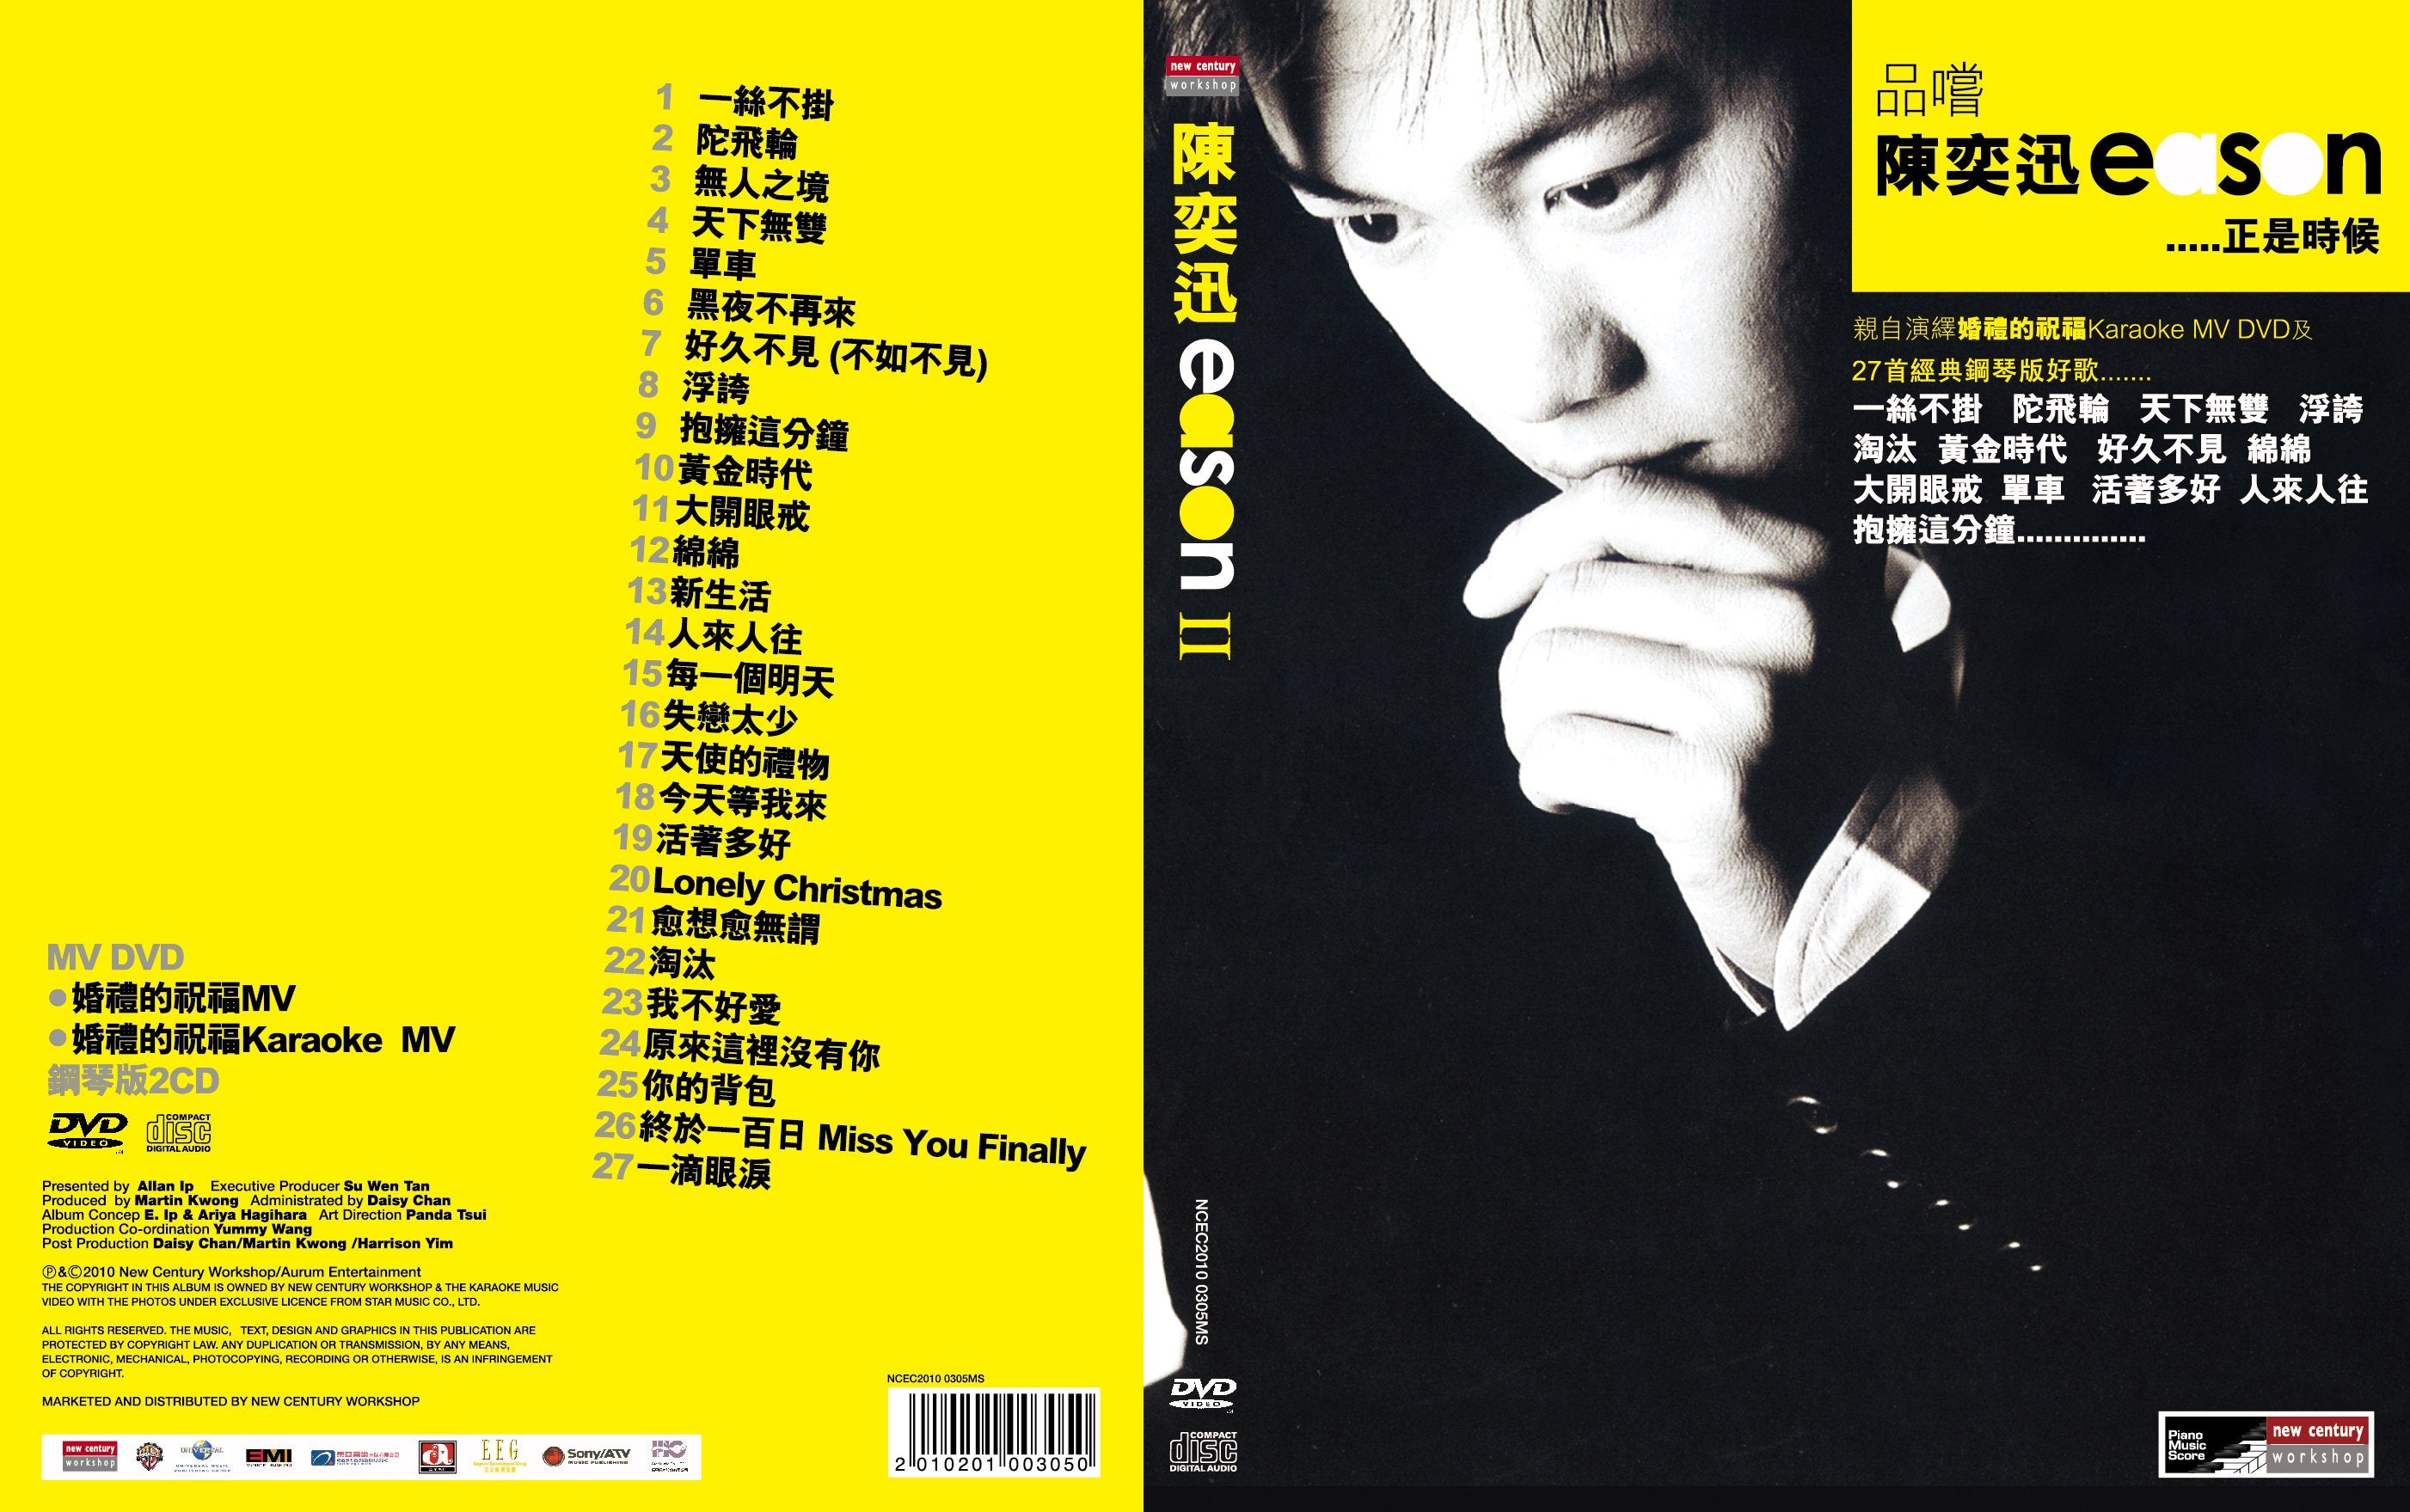 陳奕迅 Eason II 品嚐 附 鋼琴版 2CD+MV DVD